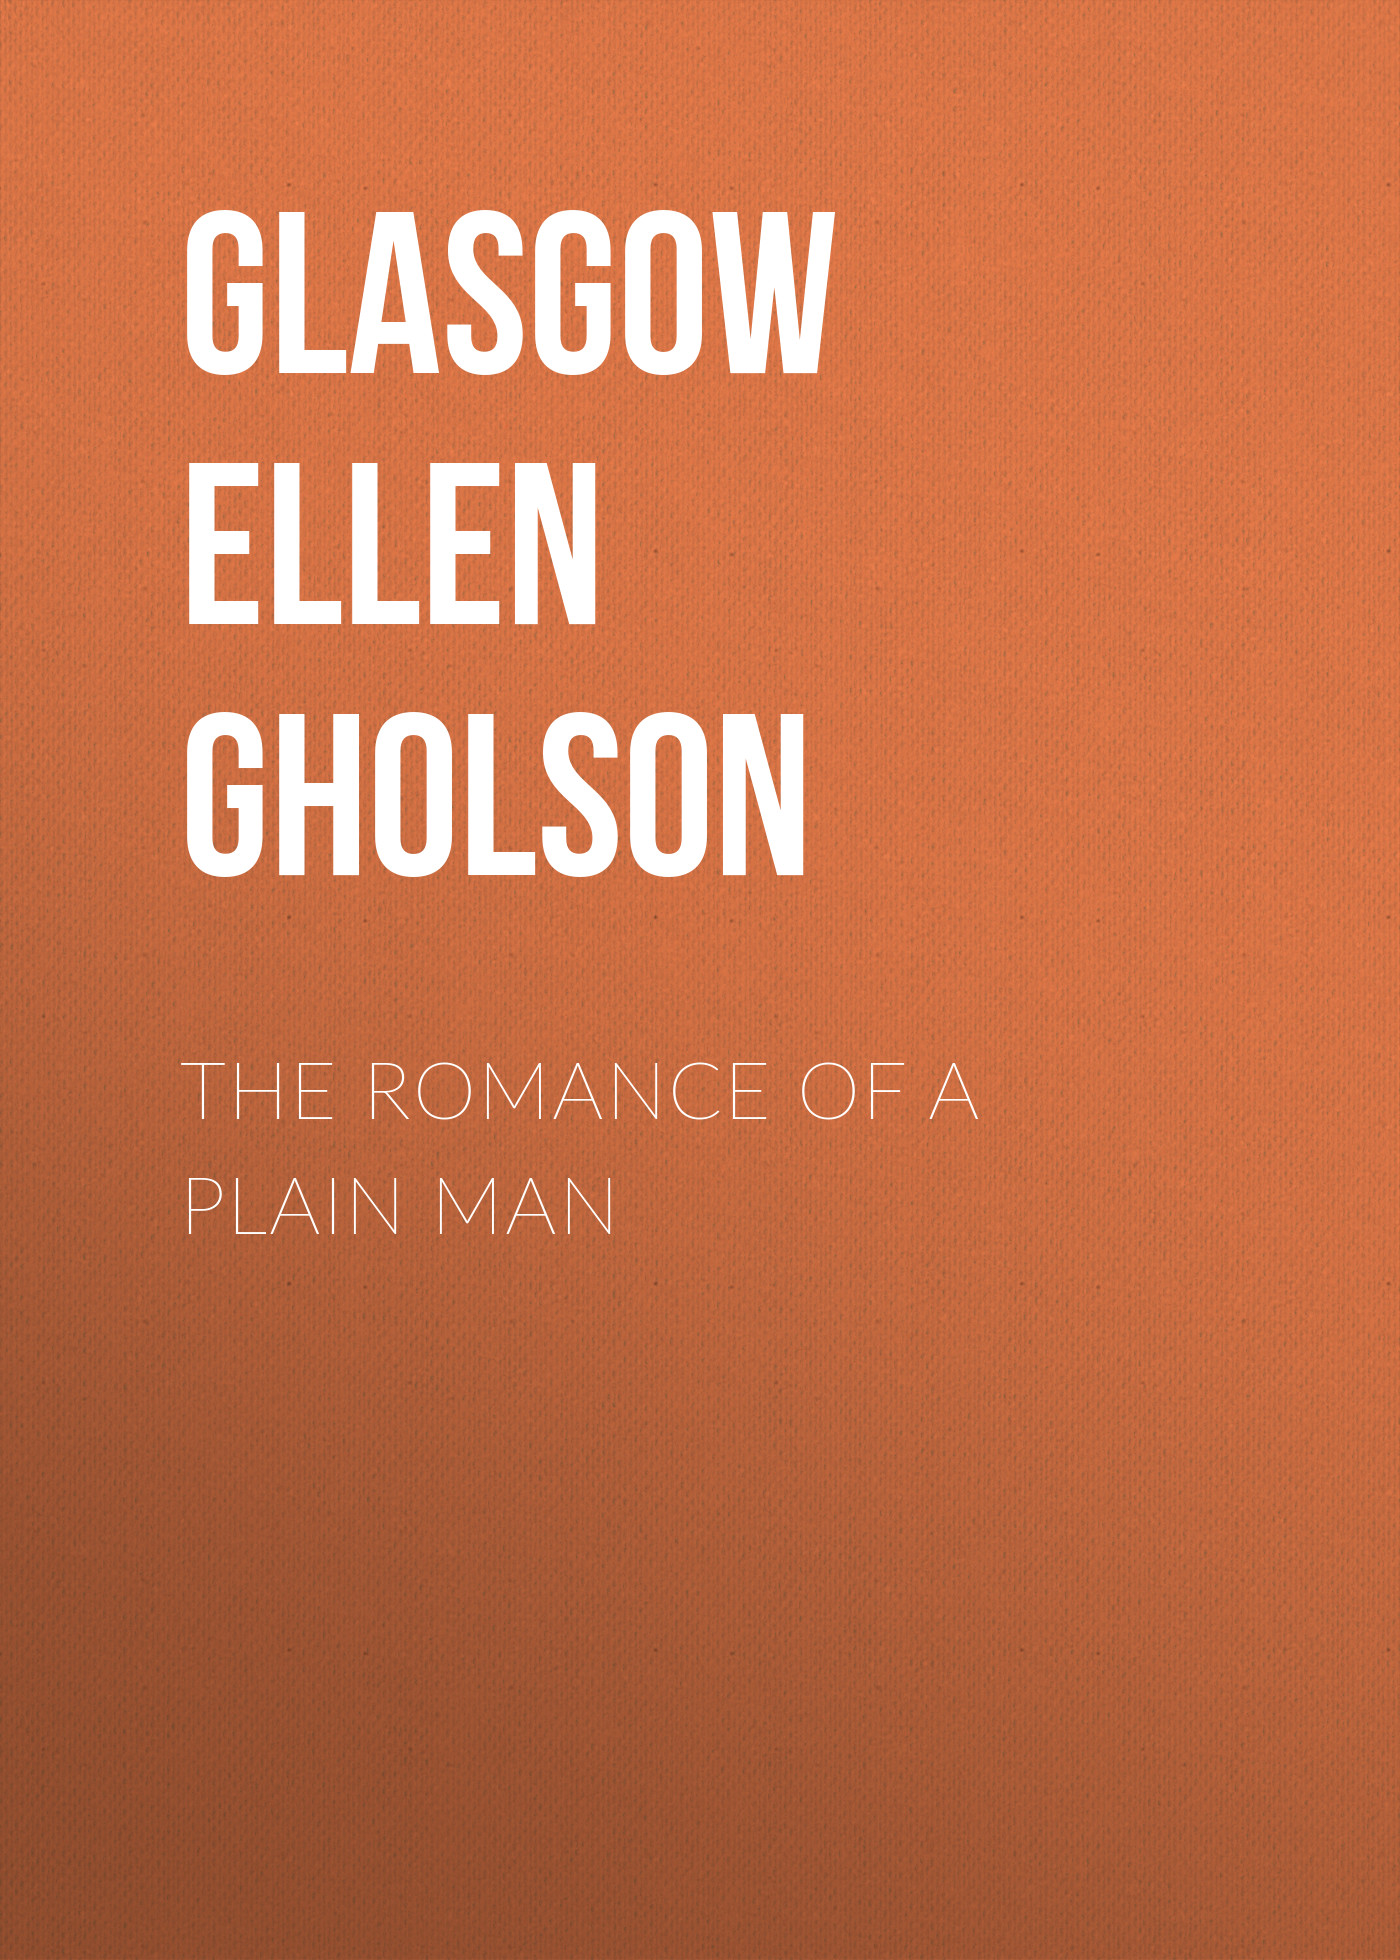 Книга The Romance of a Plain Man из серии , созданная Ellen Glasgow, может относится к жанру Техническая литература, Зарубежная старинная литература, Зарубежная классика. Стоимость книги The Romance of a Plain Man  с идентификатором 24936349 составляет 0 руб.